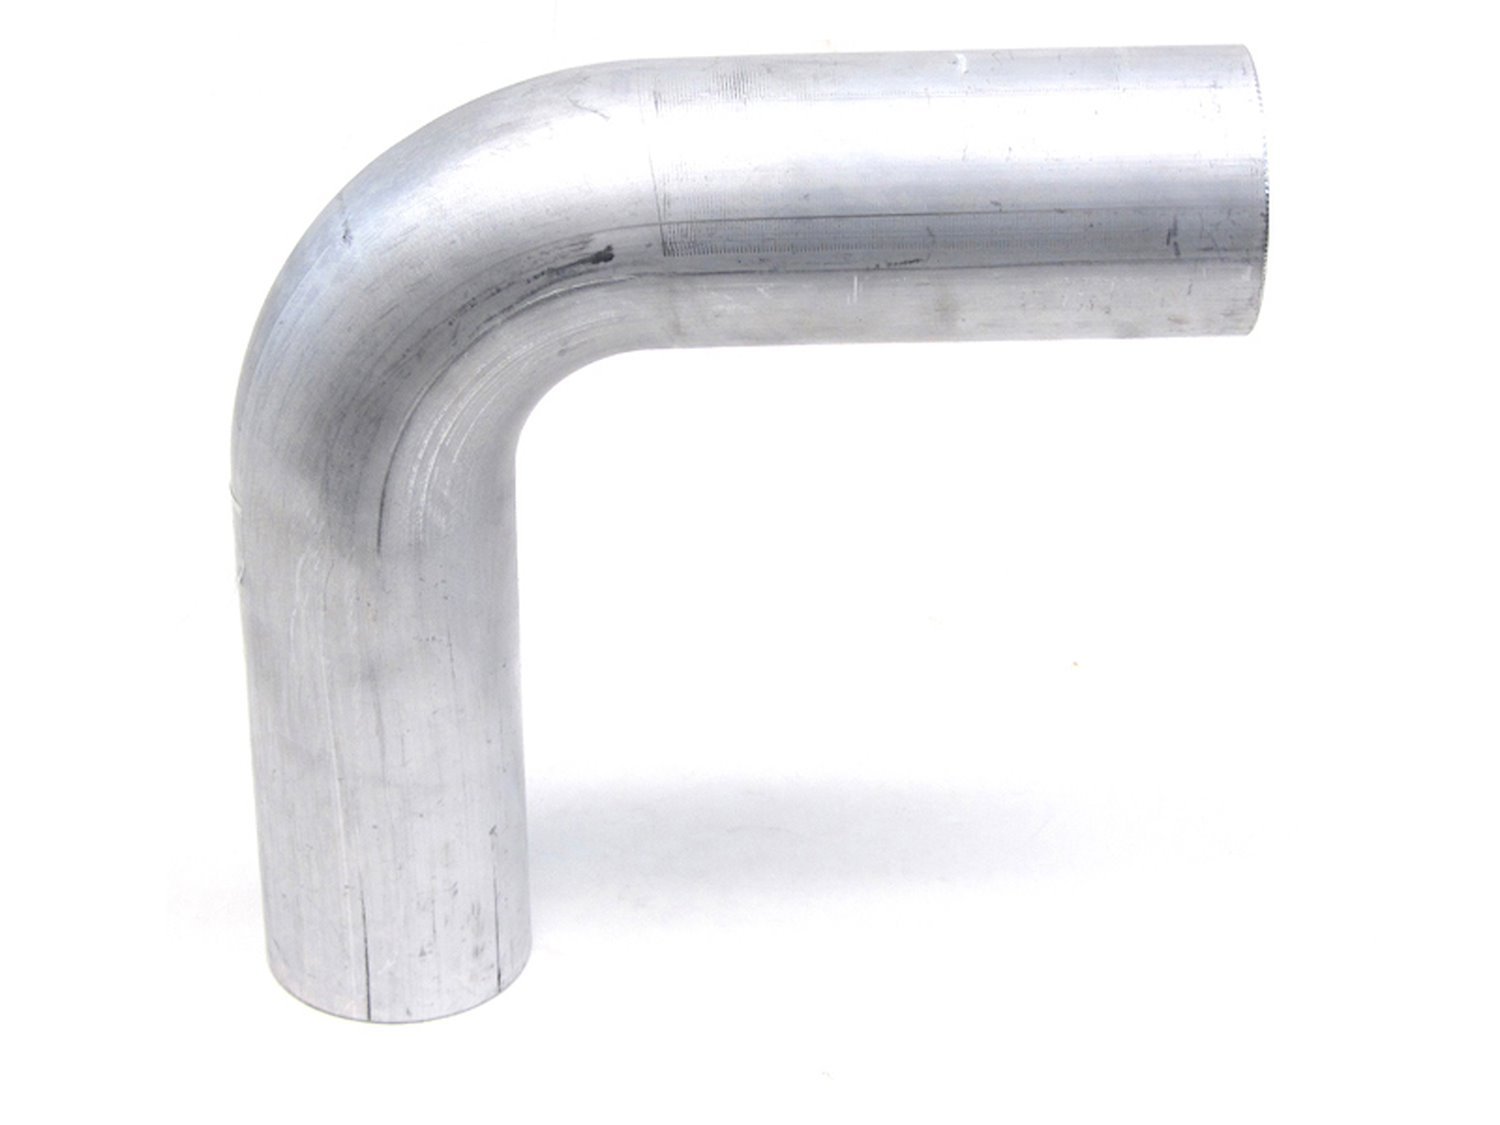 AT90-100-CLR-15 Aluminum Elbow Tube, 6061 Aluminum, 90-Degree Bend Elbow Tubing, 1 in. OD, Tight Radius, 1-1/2 in. CLR